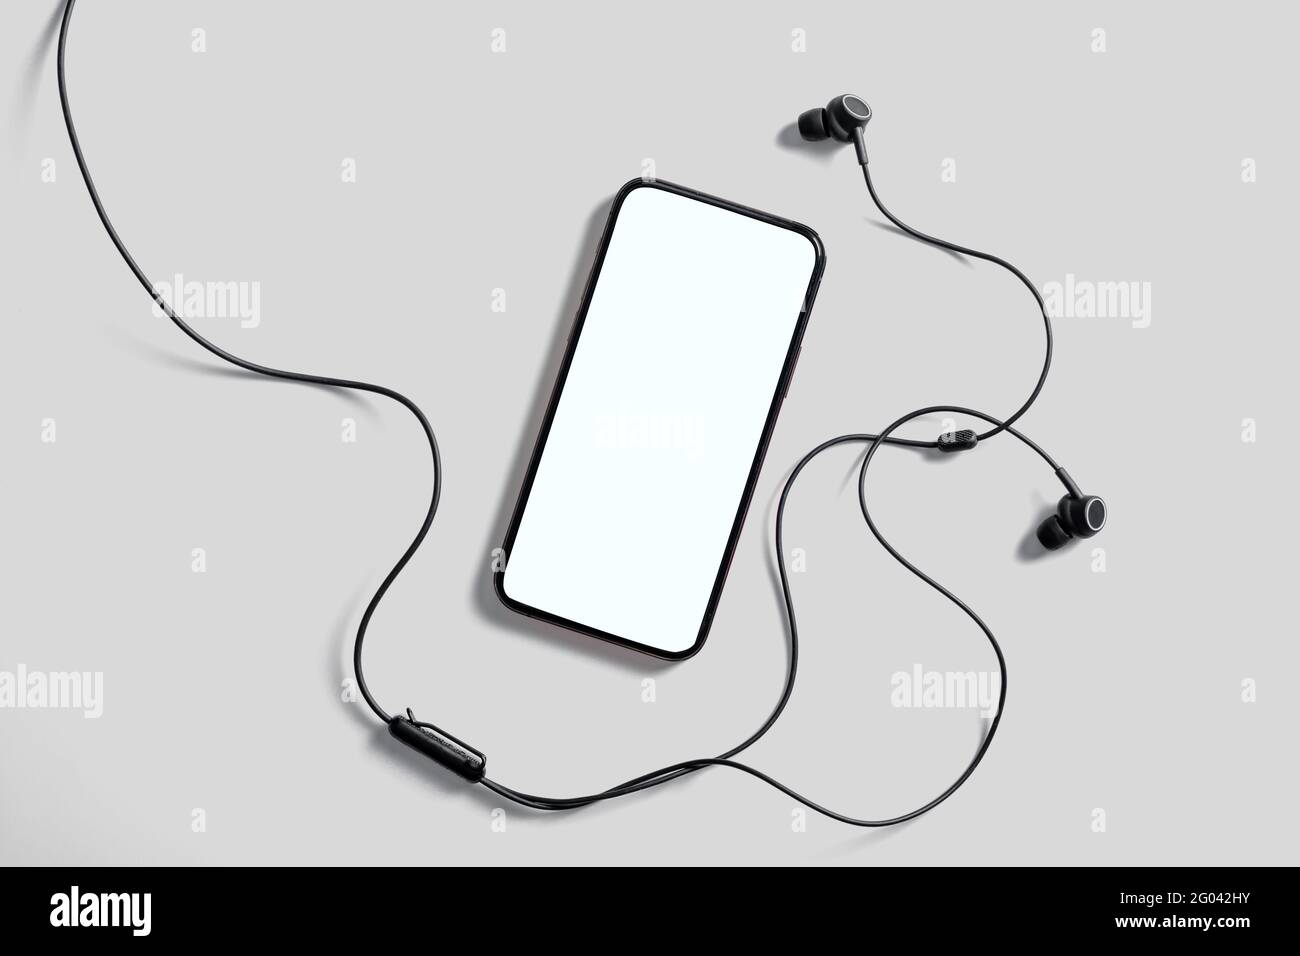 Mockup per smartphone con schermo bianco vuoto per annunci o dimostrazioni di applicazioni mobili alla moda. Cuffie, sfondo grigio. Applicazione per i social media Foto Stock